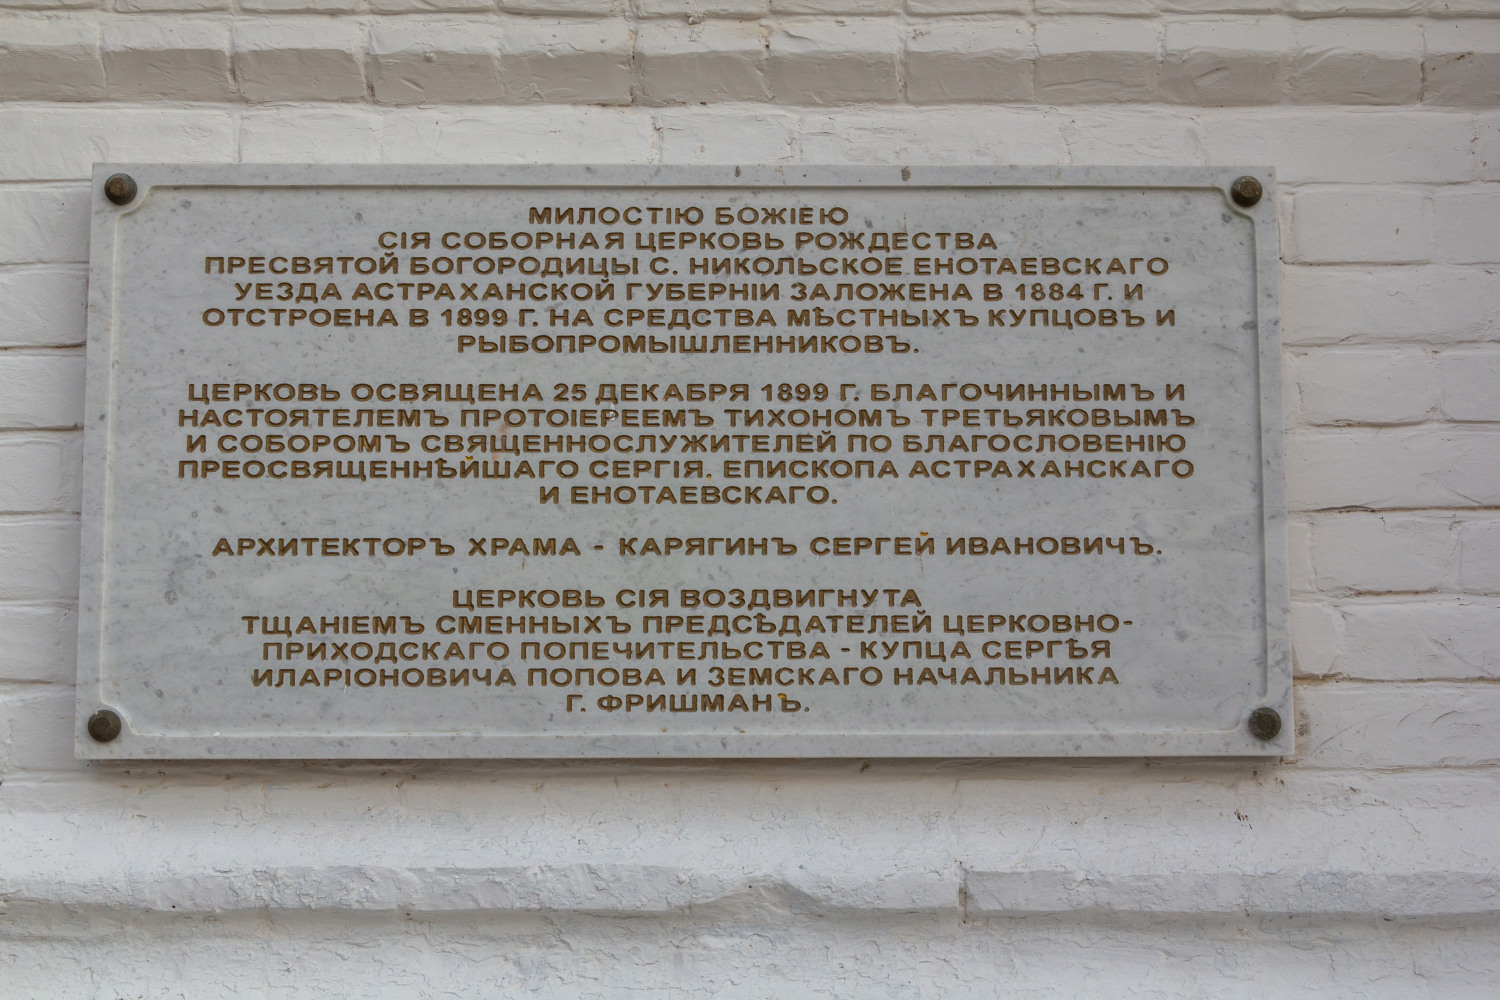 Енотаевский район, прочие н.п., с. Никольское, улица 8 Марта, 134. Memorial plaques